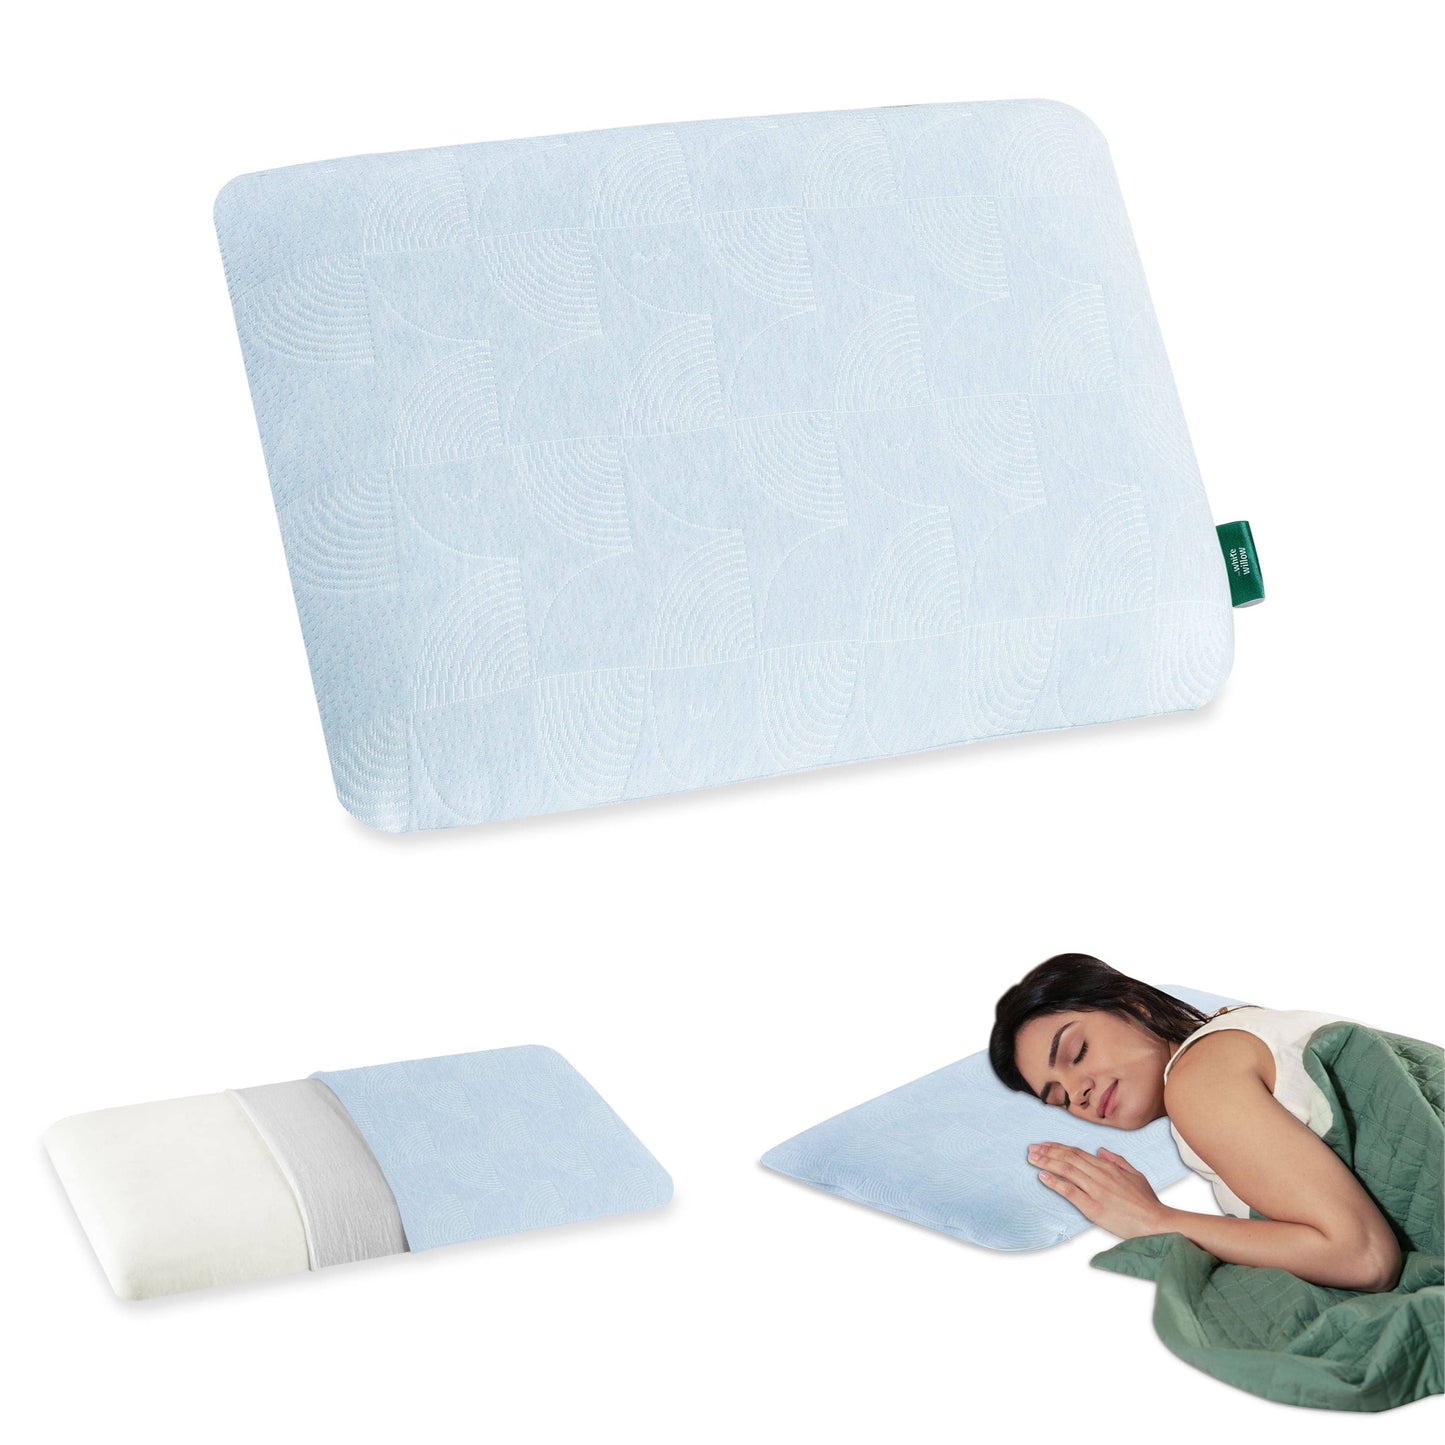 Cypress - Memory Foam Pillow - Regular - Medium Firm Regular Pillow The White Willow Ultra Slim 1.5"H King 24x16 Pack of 1 Green